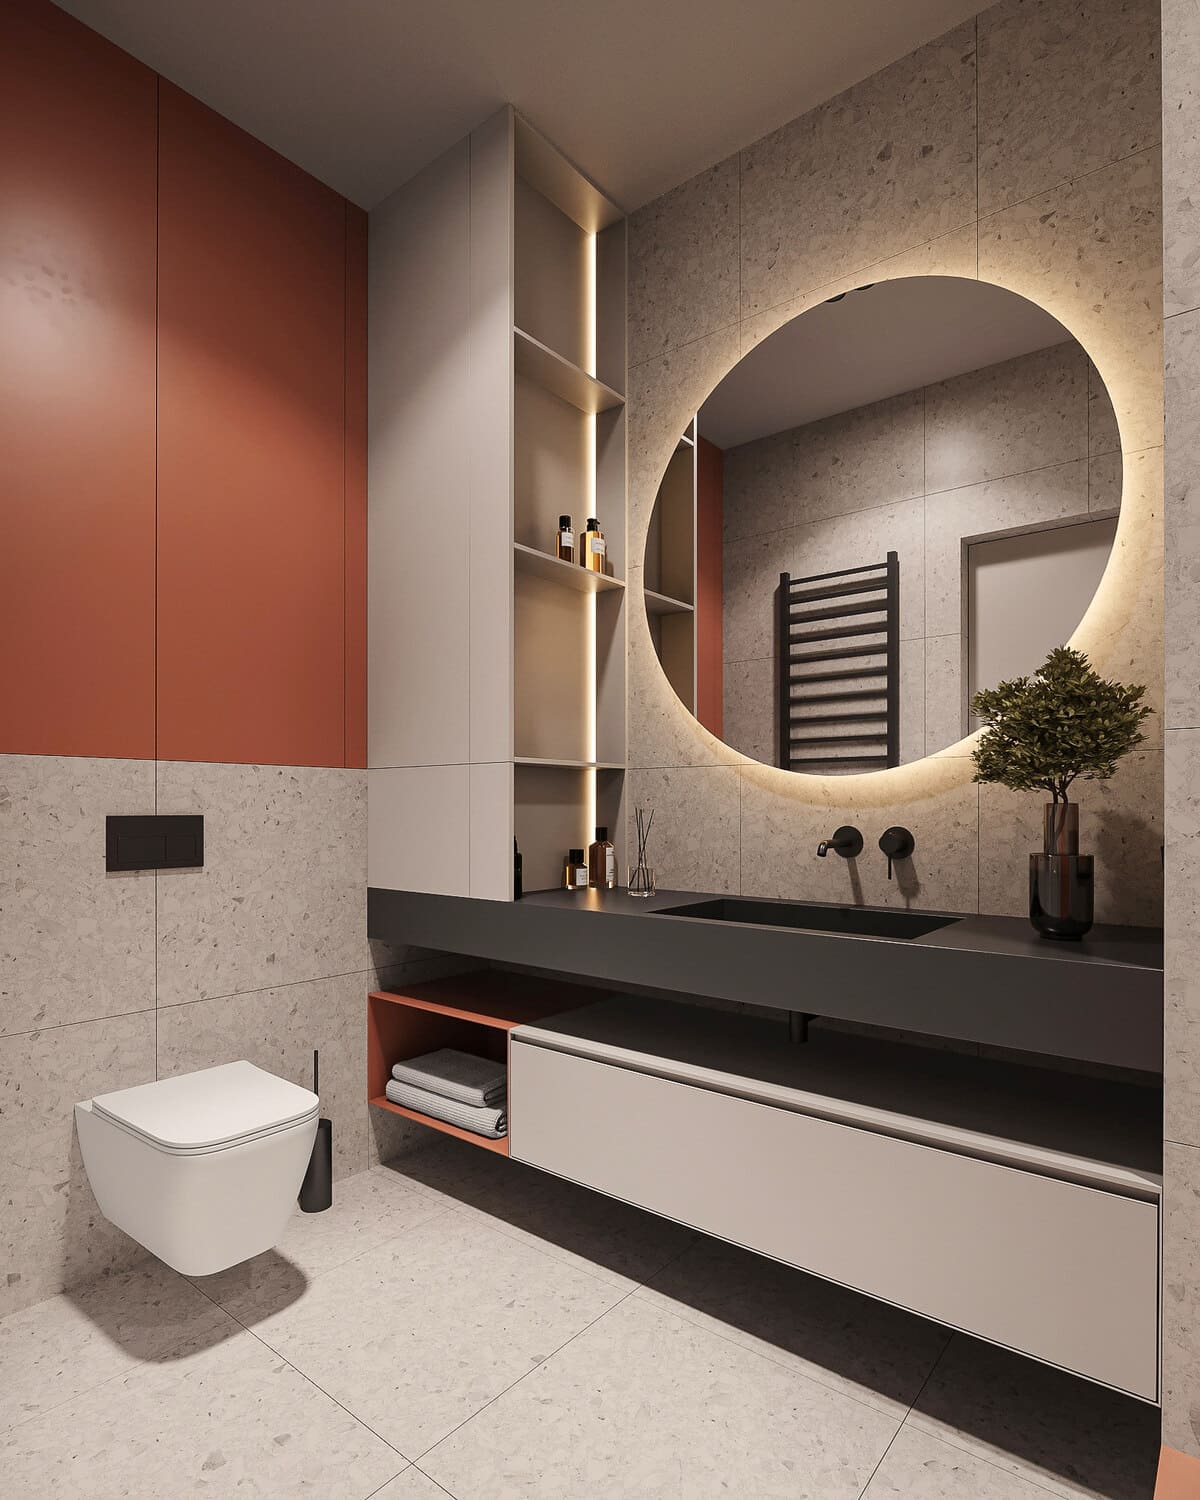 Минималистичная квартира с контрастными акцентами в стиле минимализма, ванная, фото 8